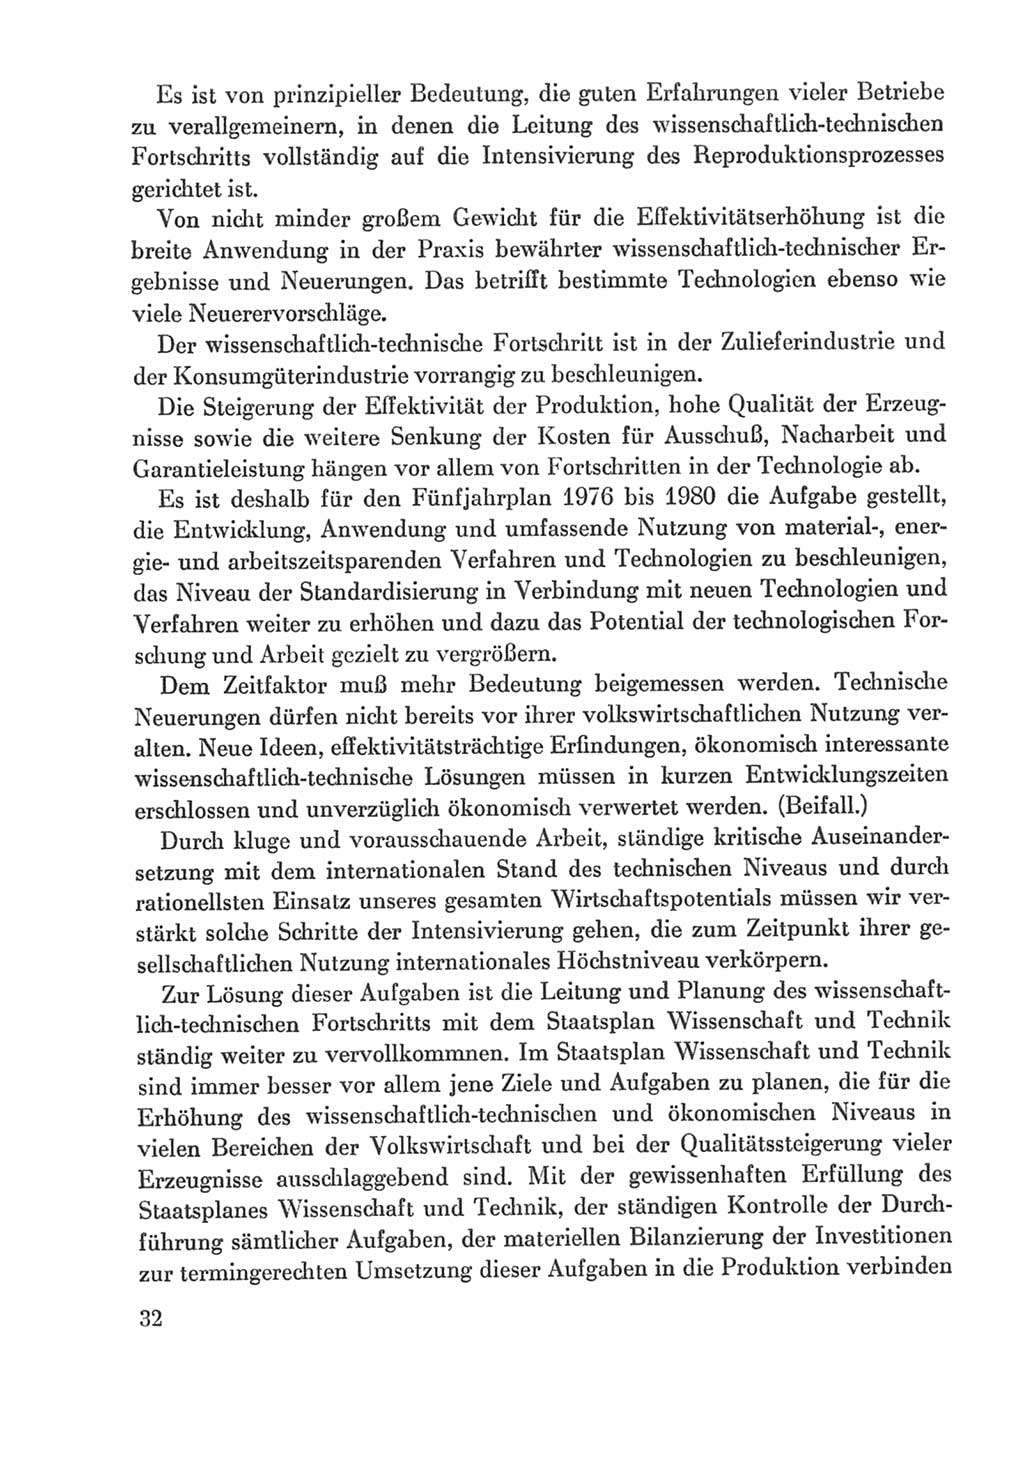 Protokoll der Verhandlungen des Ⅸ. Parteitages der Sozialistischen Einheitspartei Deutschlands (SED) [Deutsche Demokratische Republik (DDR)] 1976, Band 2, Seite 32 (Prot. Verh. Ⅸ. PT SED DDR 1976, Bd. 2, S. 32)